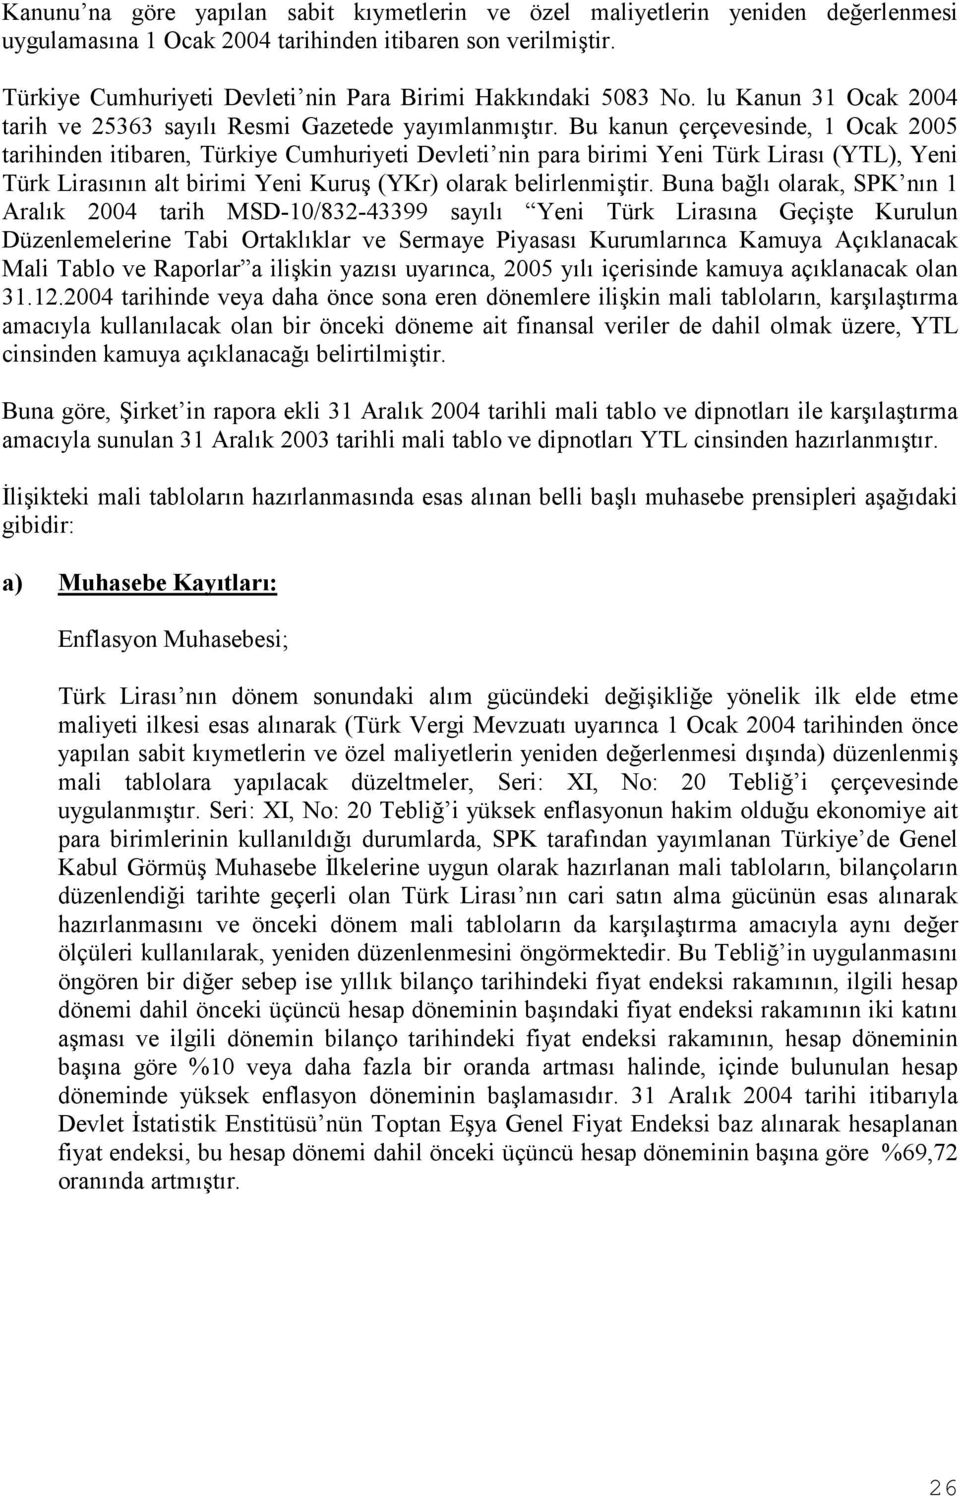 Bu kanun çerçevesinde, 1 Ocak 2005 tarihinden itibaren, Türkiye Cumhuriyeti Devleti nin para birimi Yeni Türk Lirasõ (YTL), Yeni Türk Lirasõnõn alt birimi Yeni Kuruş (YKr) olarak belirlenmiştir.